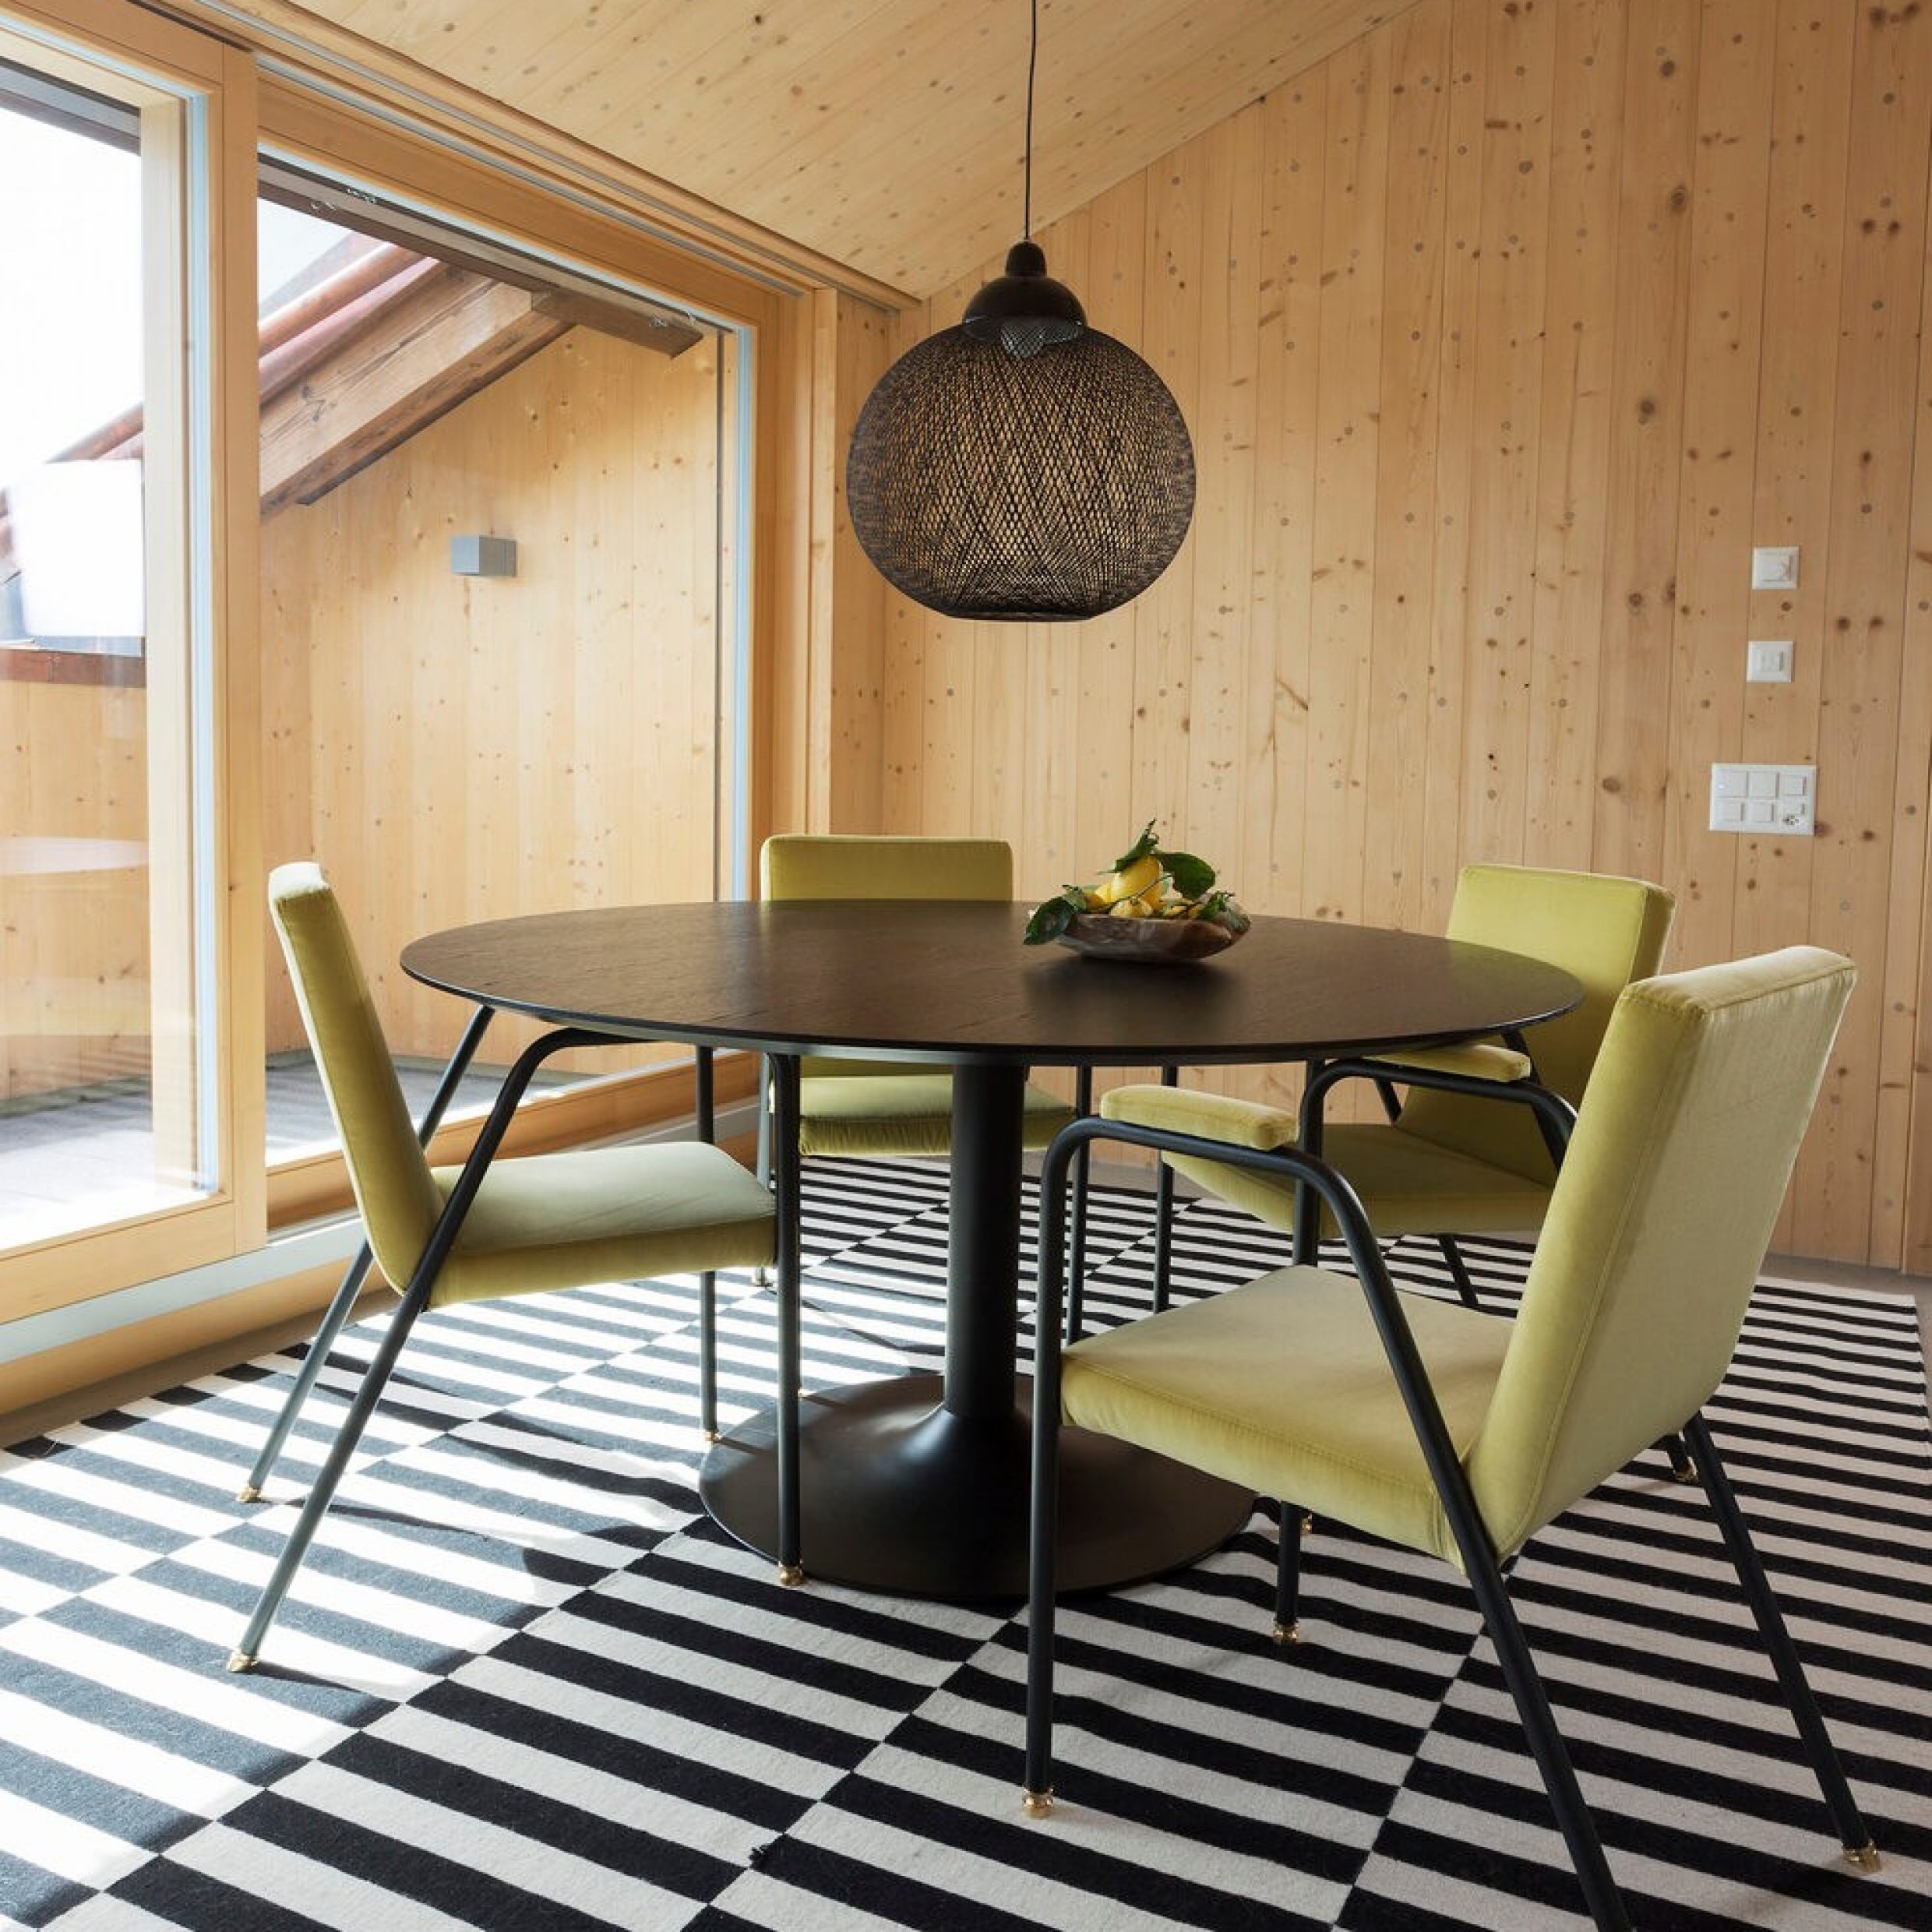 Una sala da pranzo con un tavolo rotondo e quattro sedie su un tappeto a righe bianche e nere.